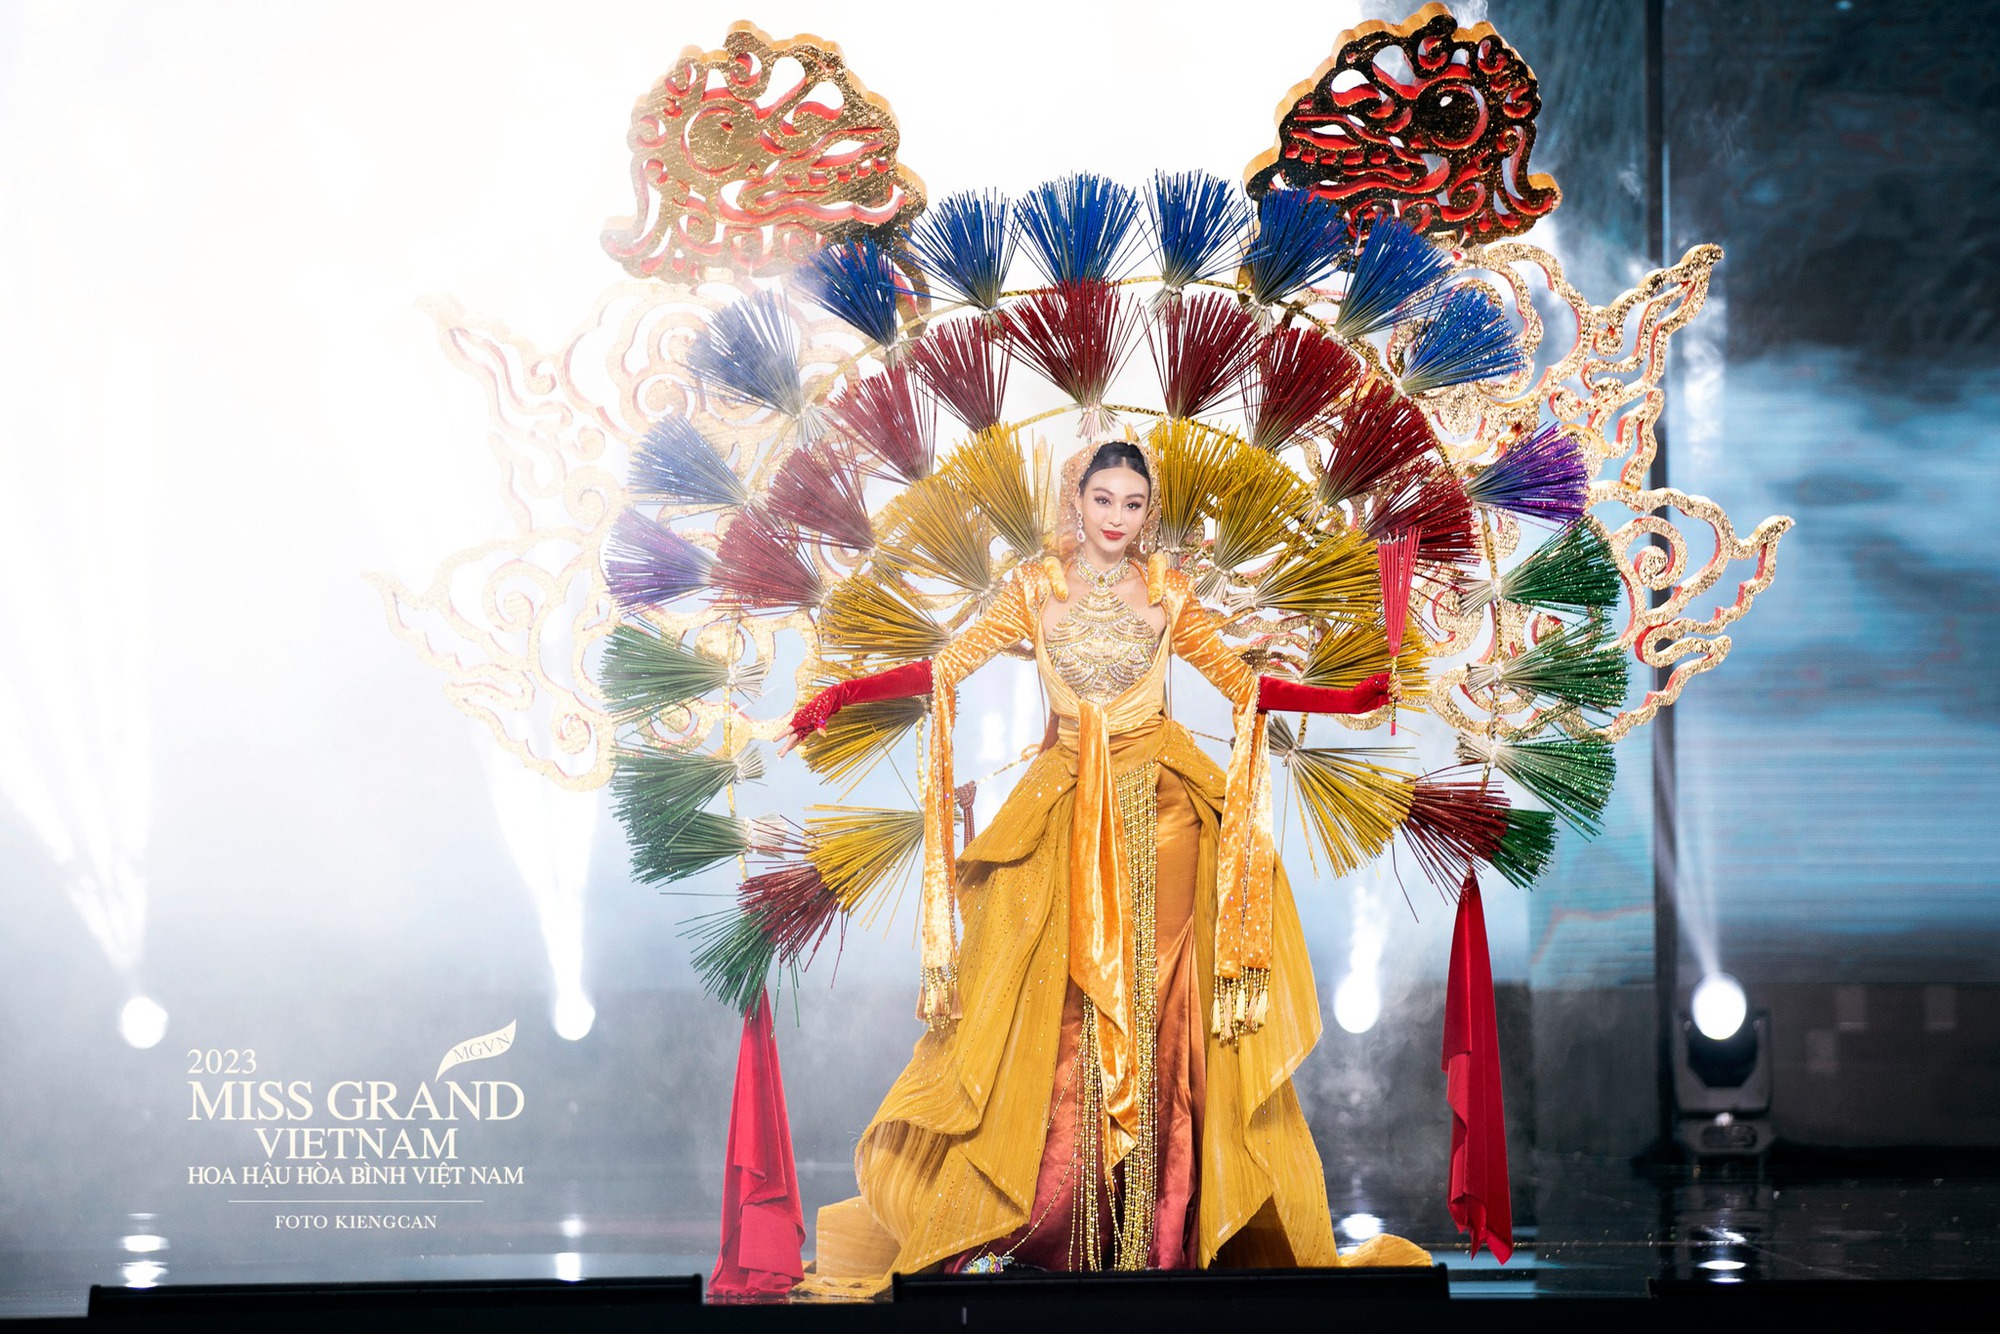 Trang phục dân tộc bị chê 'giống bàn thờ' tại Miss Grand Vietnam 2023 - Ảnh 6.